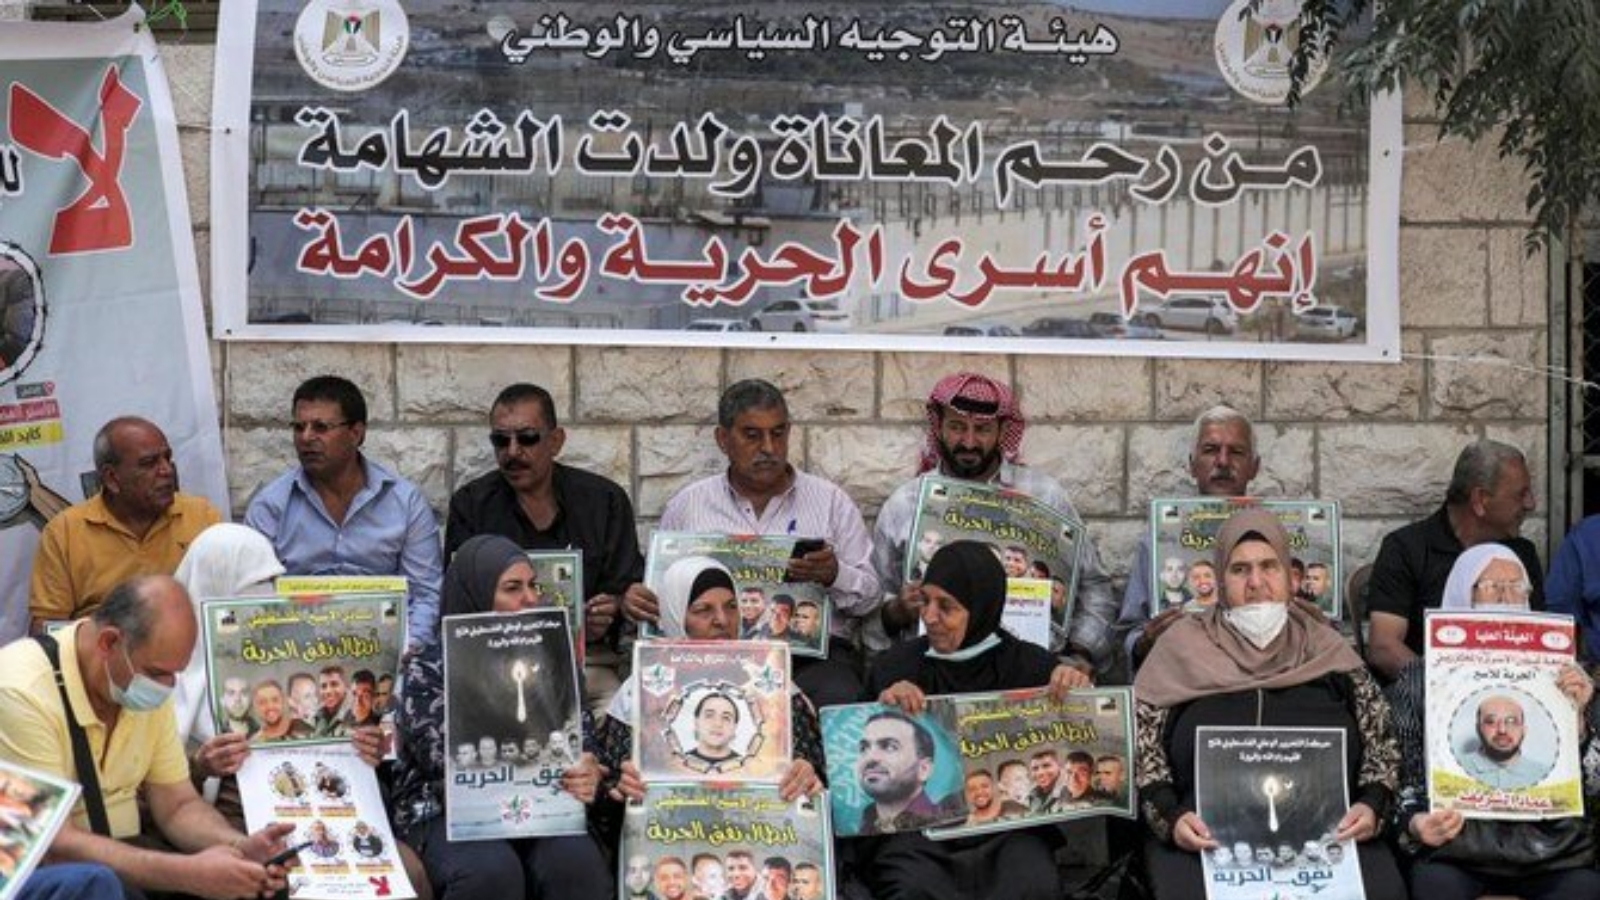 أشخاص يتجمعون لدعم الأسرى الفلسطينيين المحتجزين في السجون الإسرائيلية، خارج مكاتب اللجنة الدولية للصليب الأحمر، رام الله، الضفة الغربية. بتاريخ 14 أيلول/ سبتمبر 2021.